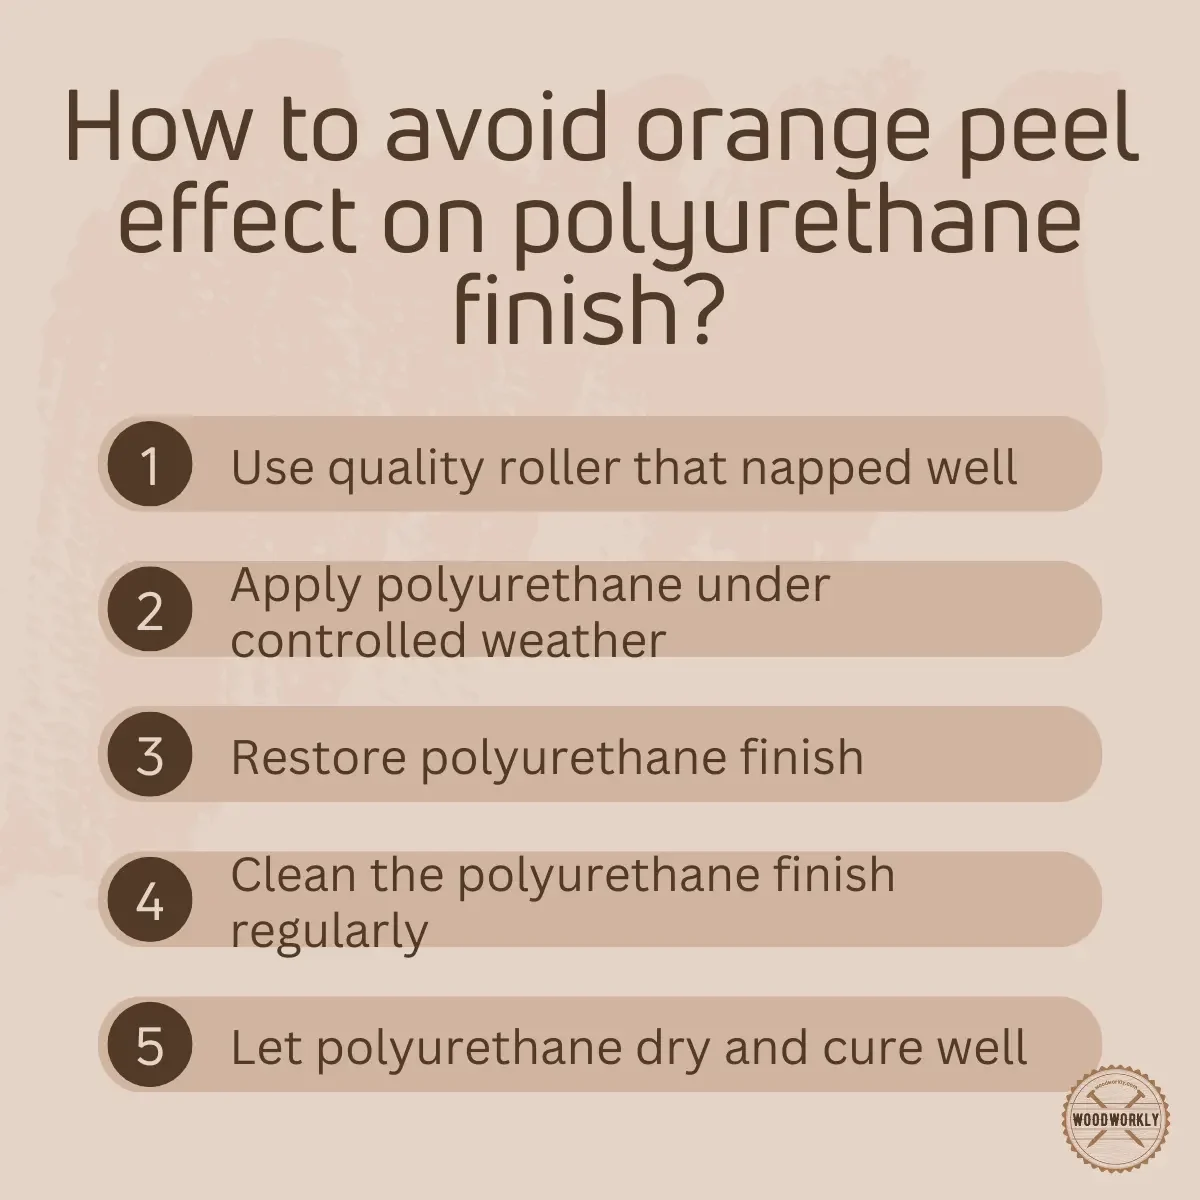 How to avoid orange peel effect on polyurethane finish